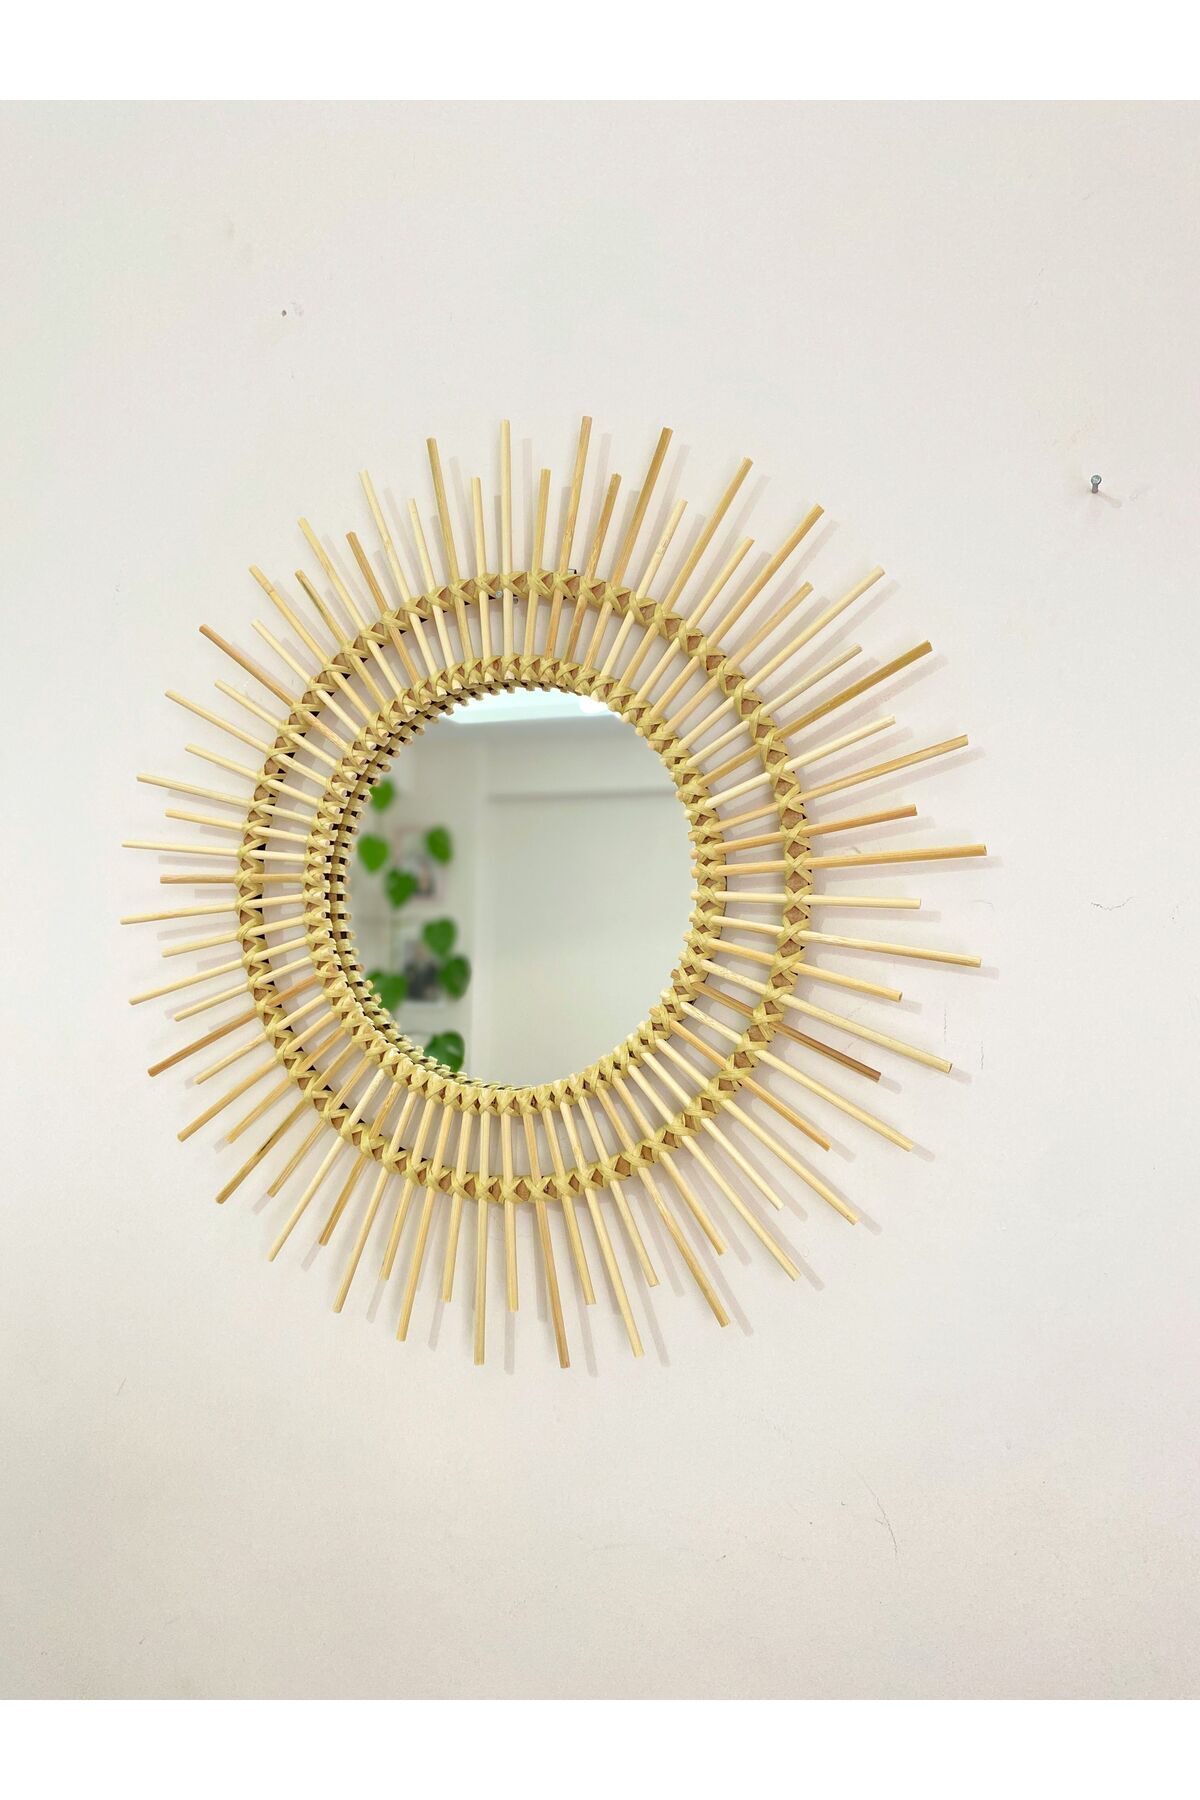 Boncukafası Bambu Ayna 45 Cm Duvar Aynası Konsol Aynası Dekoratif Ayna Çocuk Odası